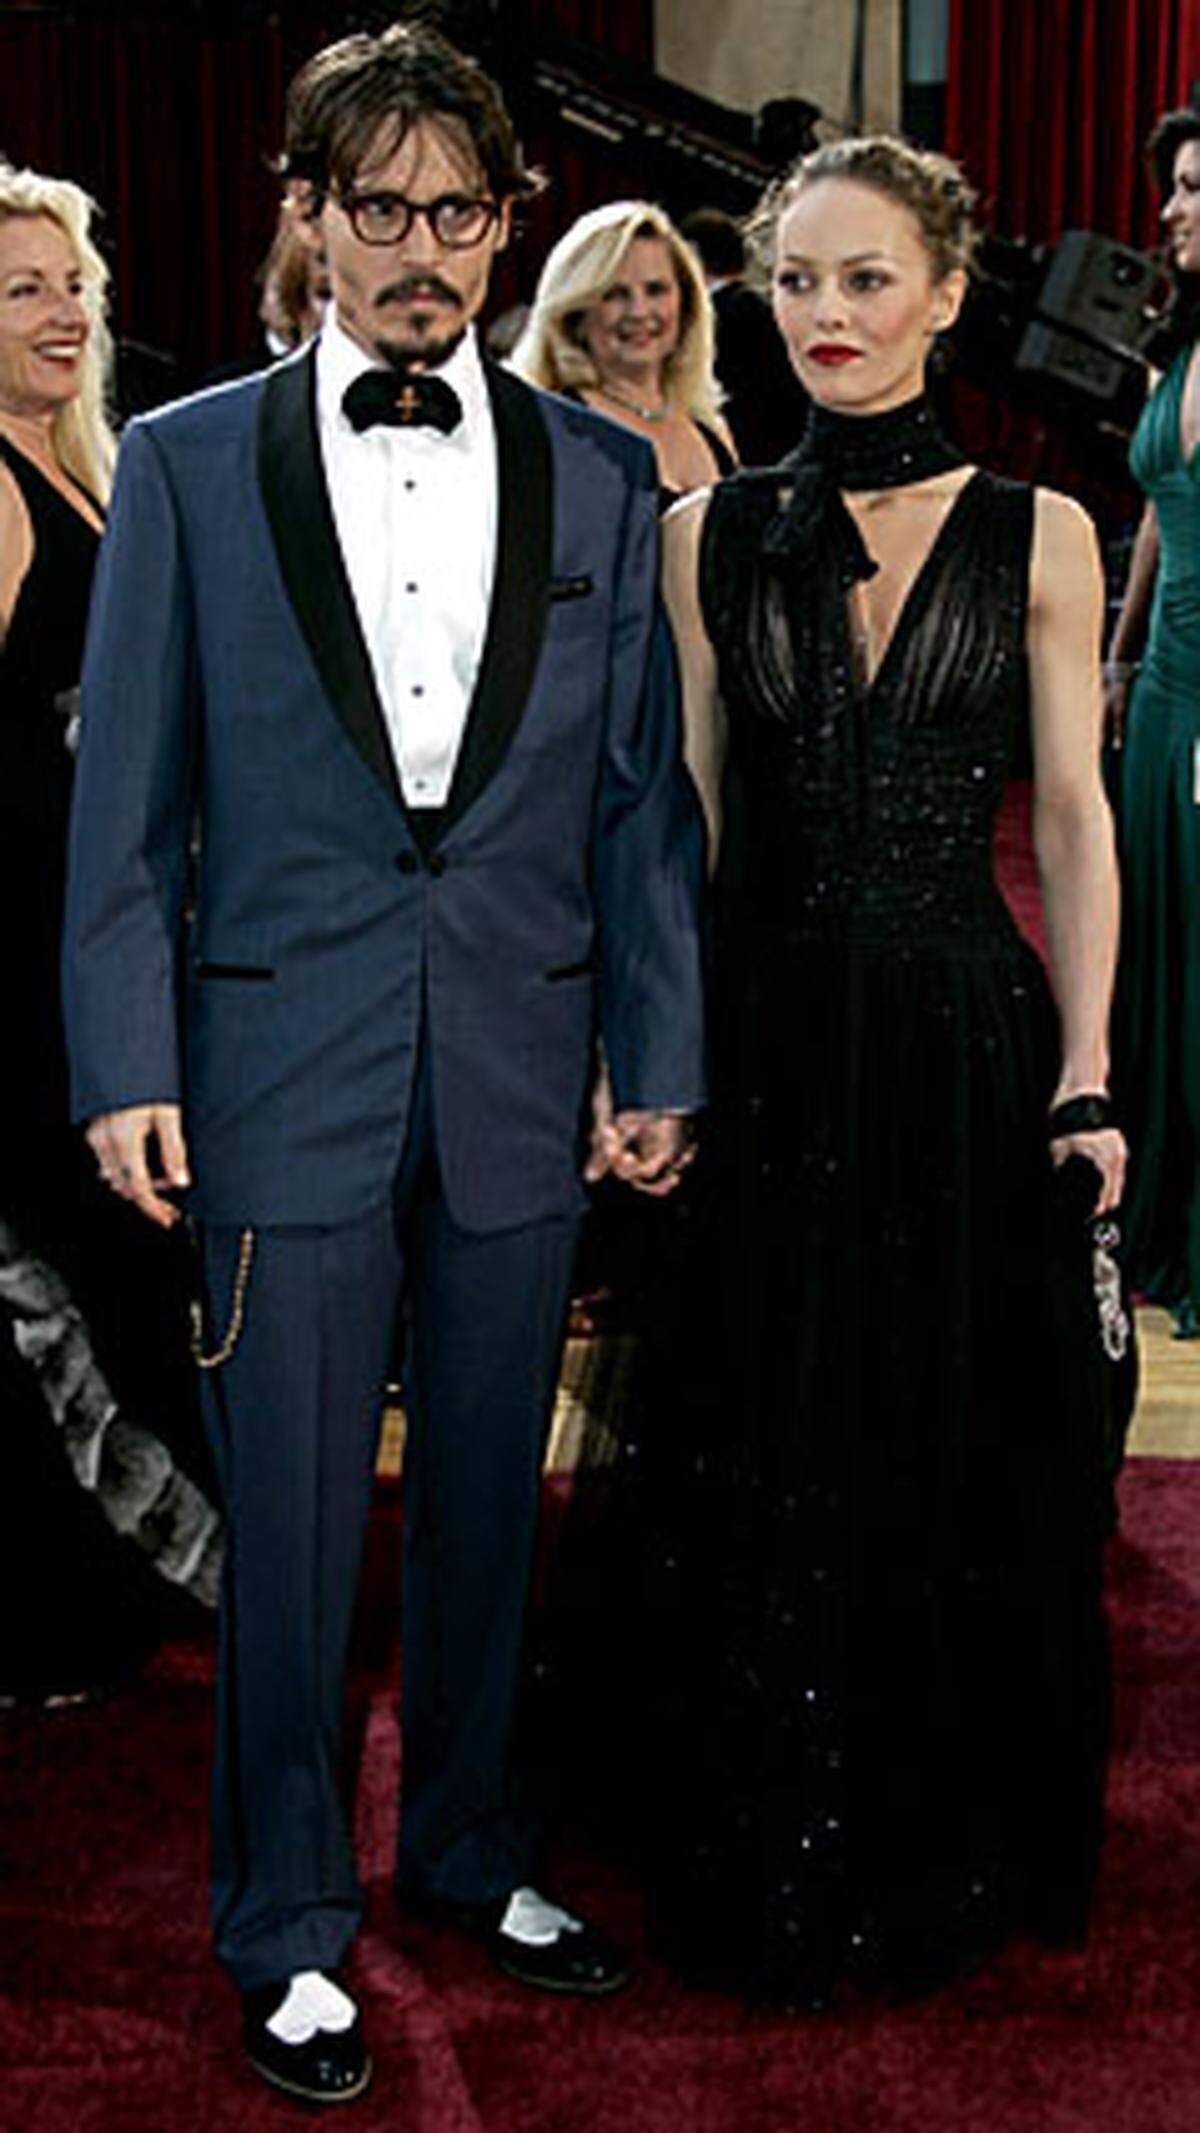 Johnny Depp ist cool. Sein blauer Anzug ist es nicht. Das hier ein Widerspruch entsteht, ist auch an den Gesichtern des Schauspielers und seiner Frau Vanessa Paradis abzulesen.